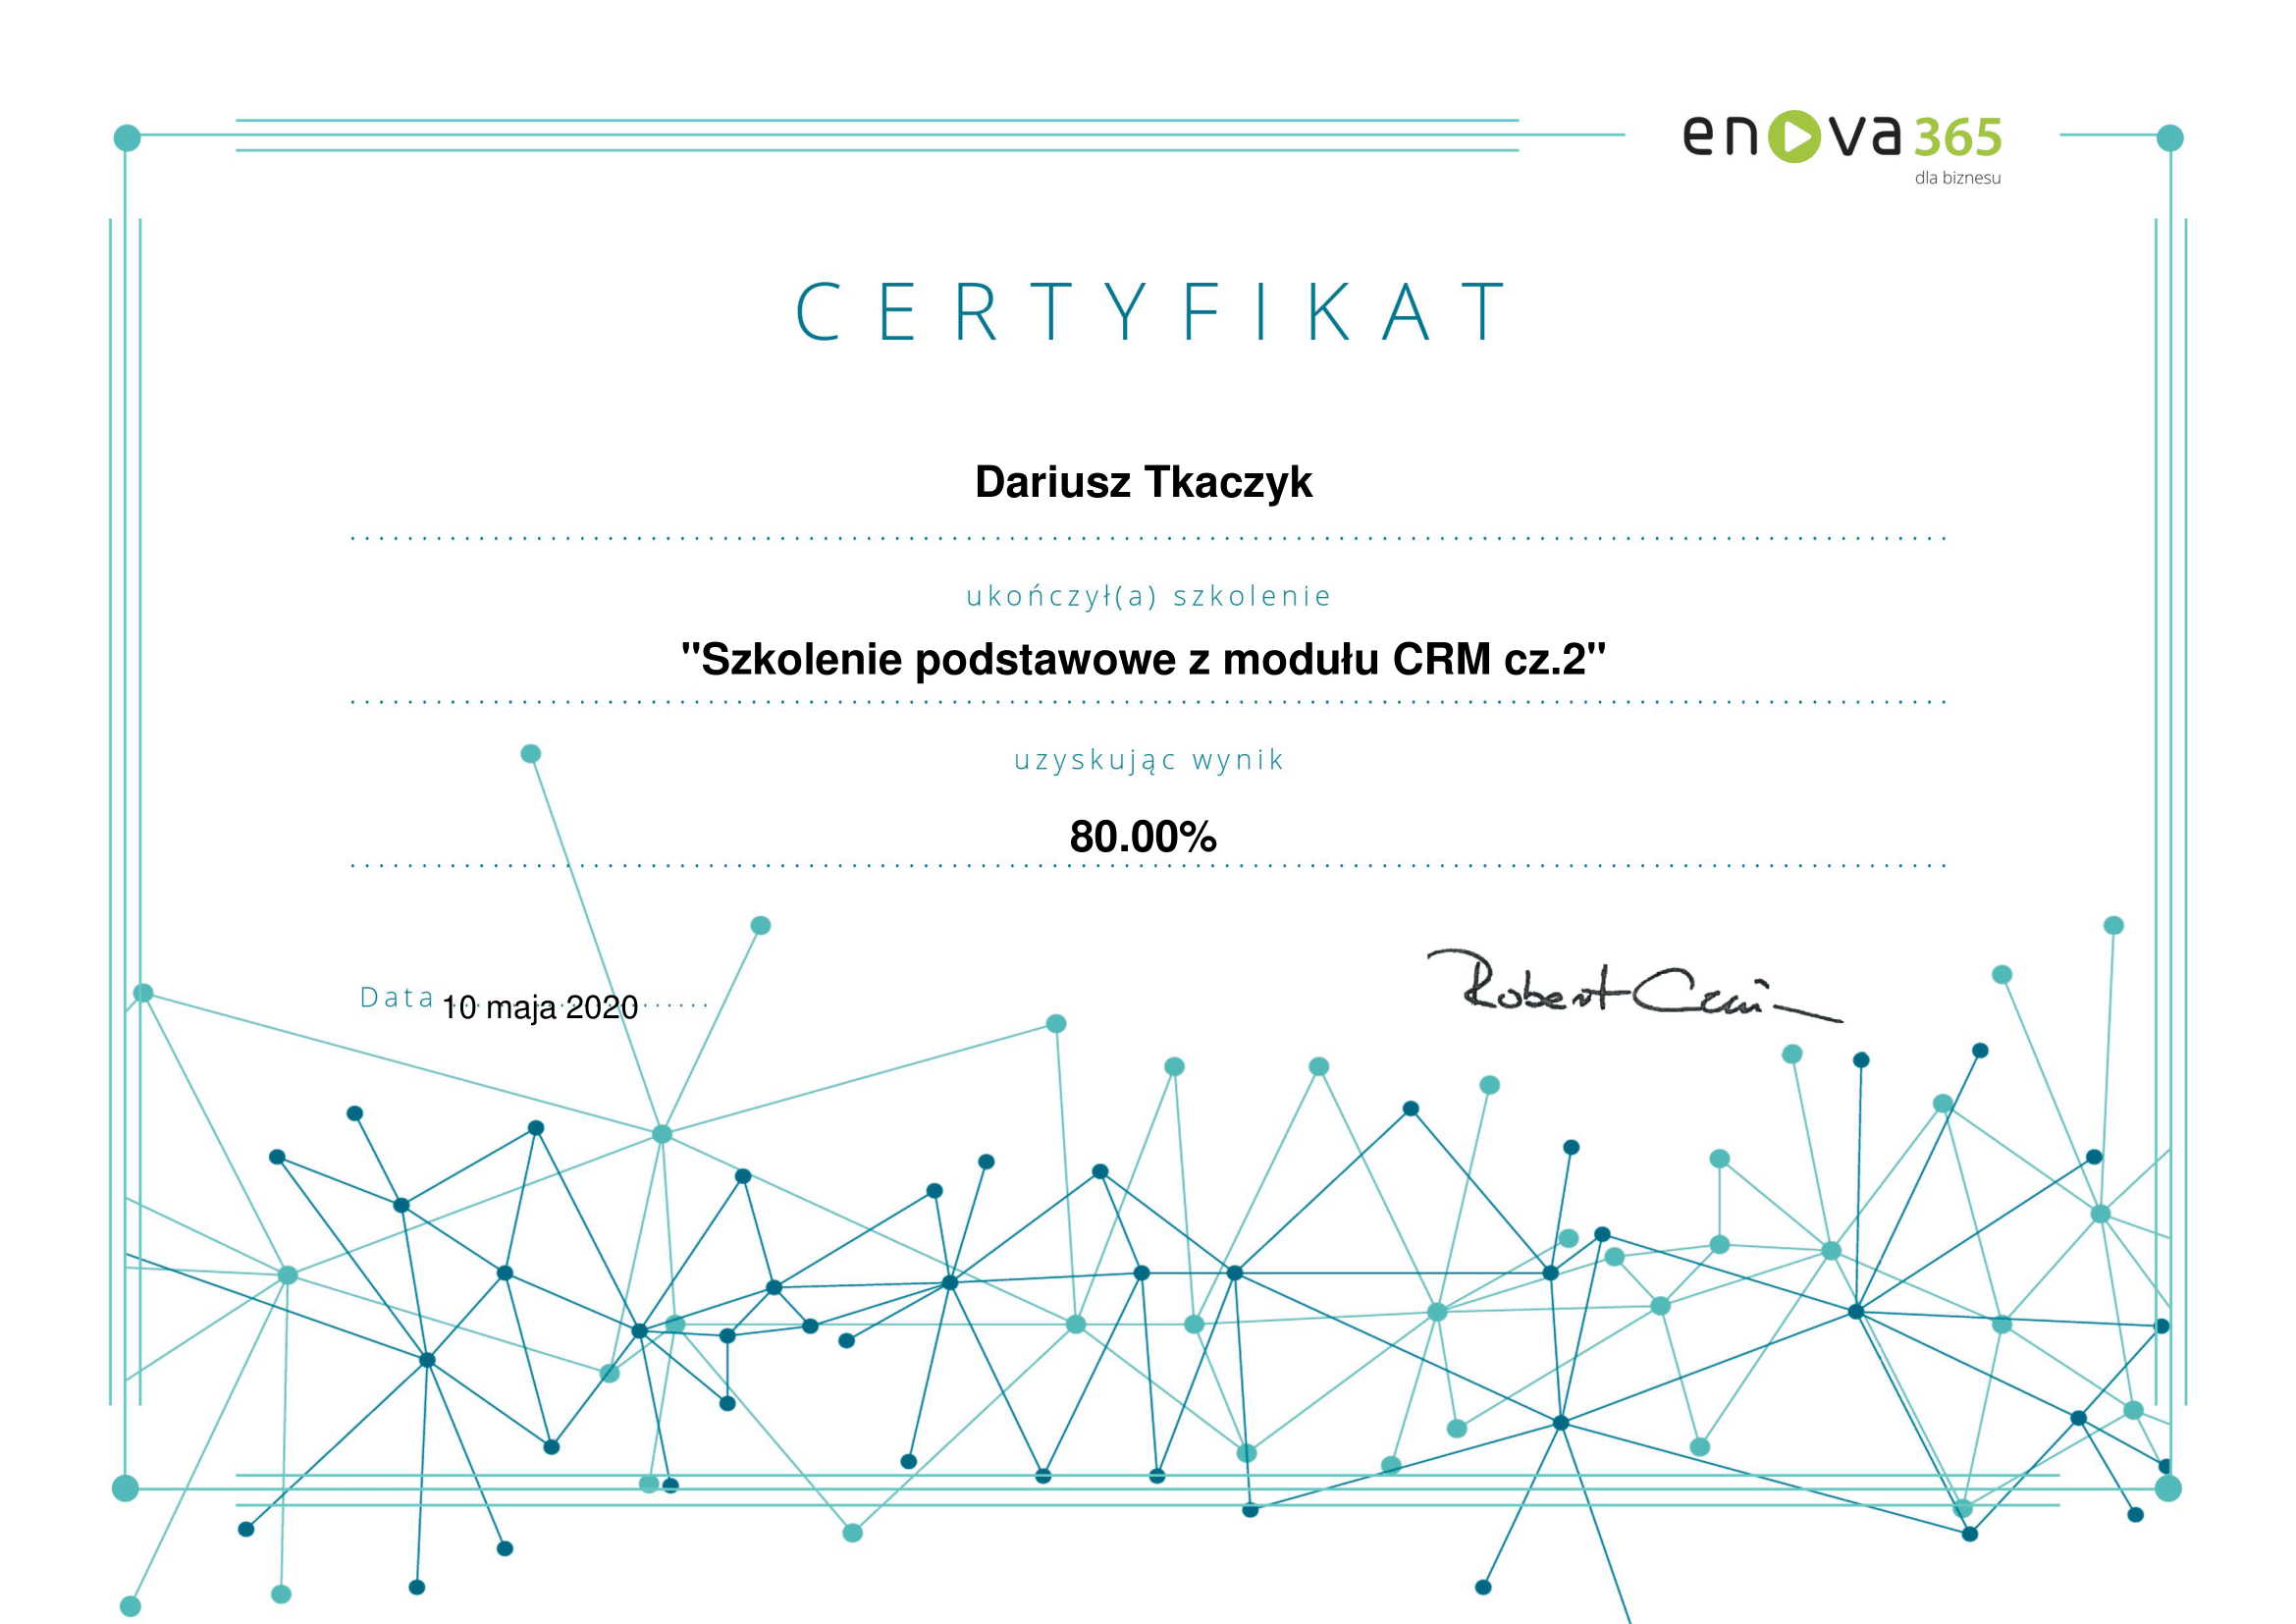 enova365_Certyfikat_podstawowy_CRM_cz2